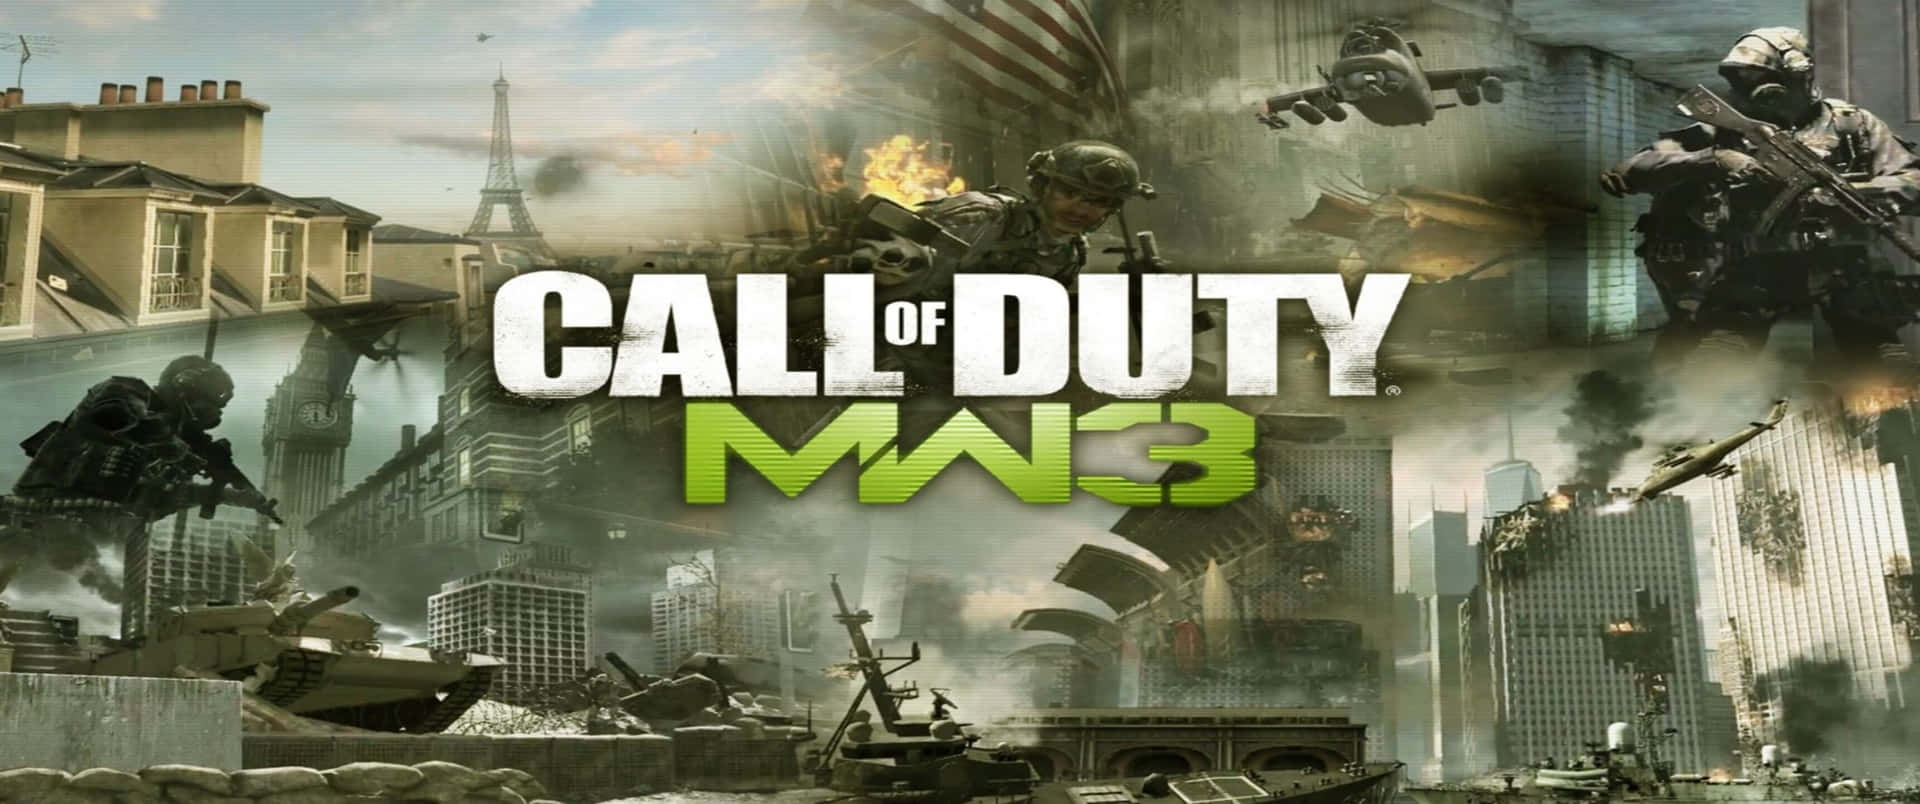 Collagedi Scene 3440x1440p Sfondo Di Call Of Duty Modern Warfare